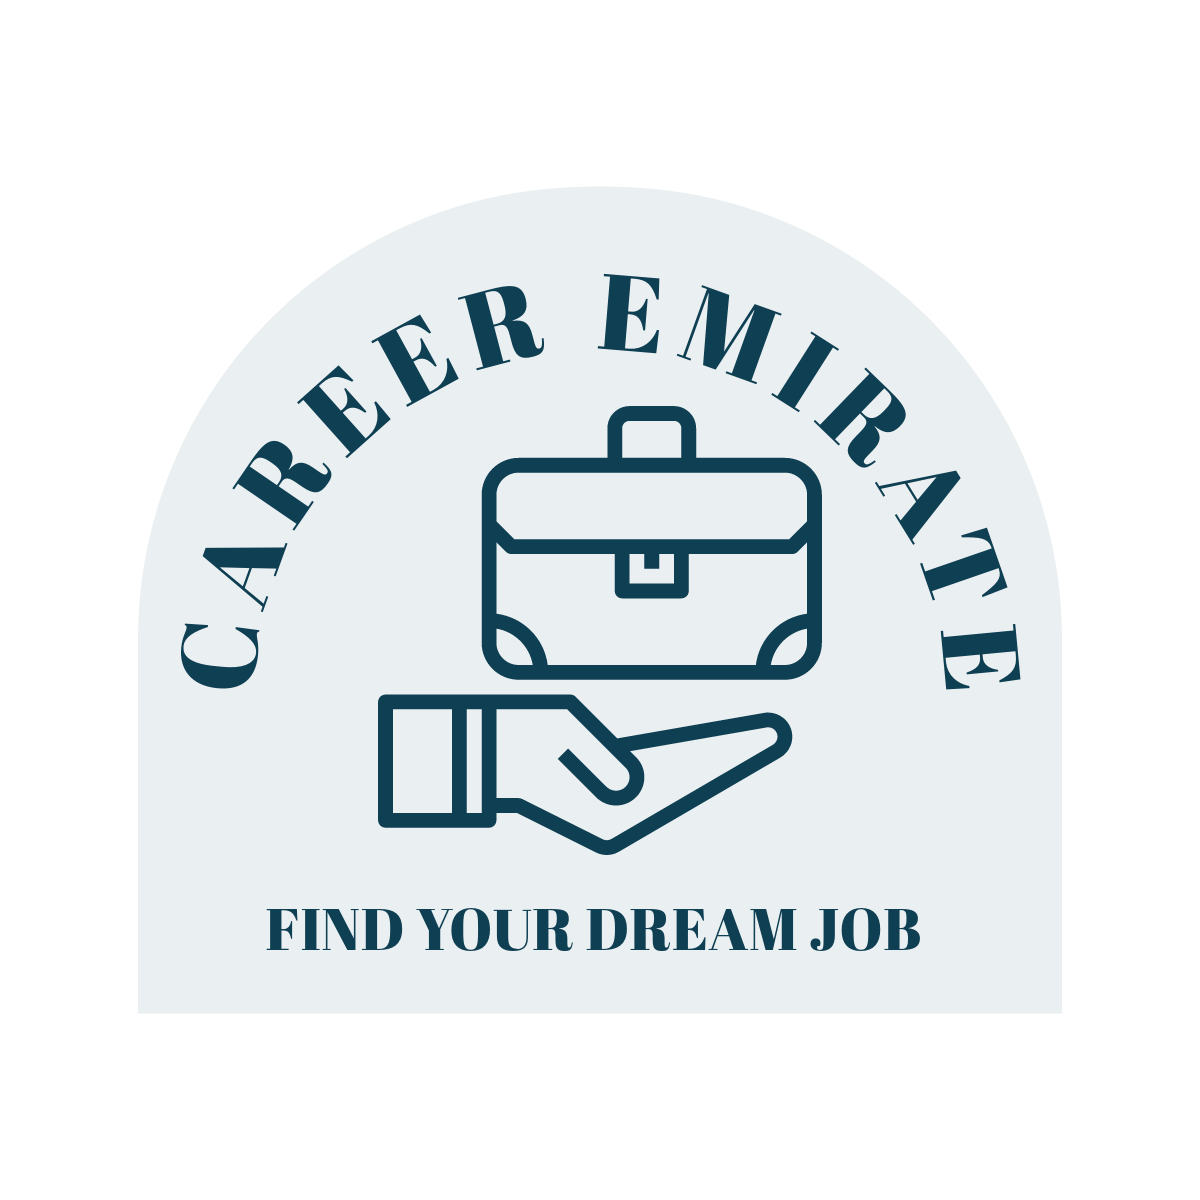 Career Emirates - UAE job updates